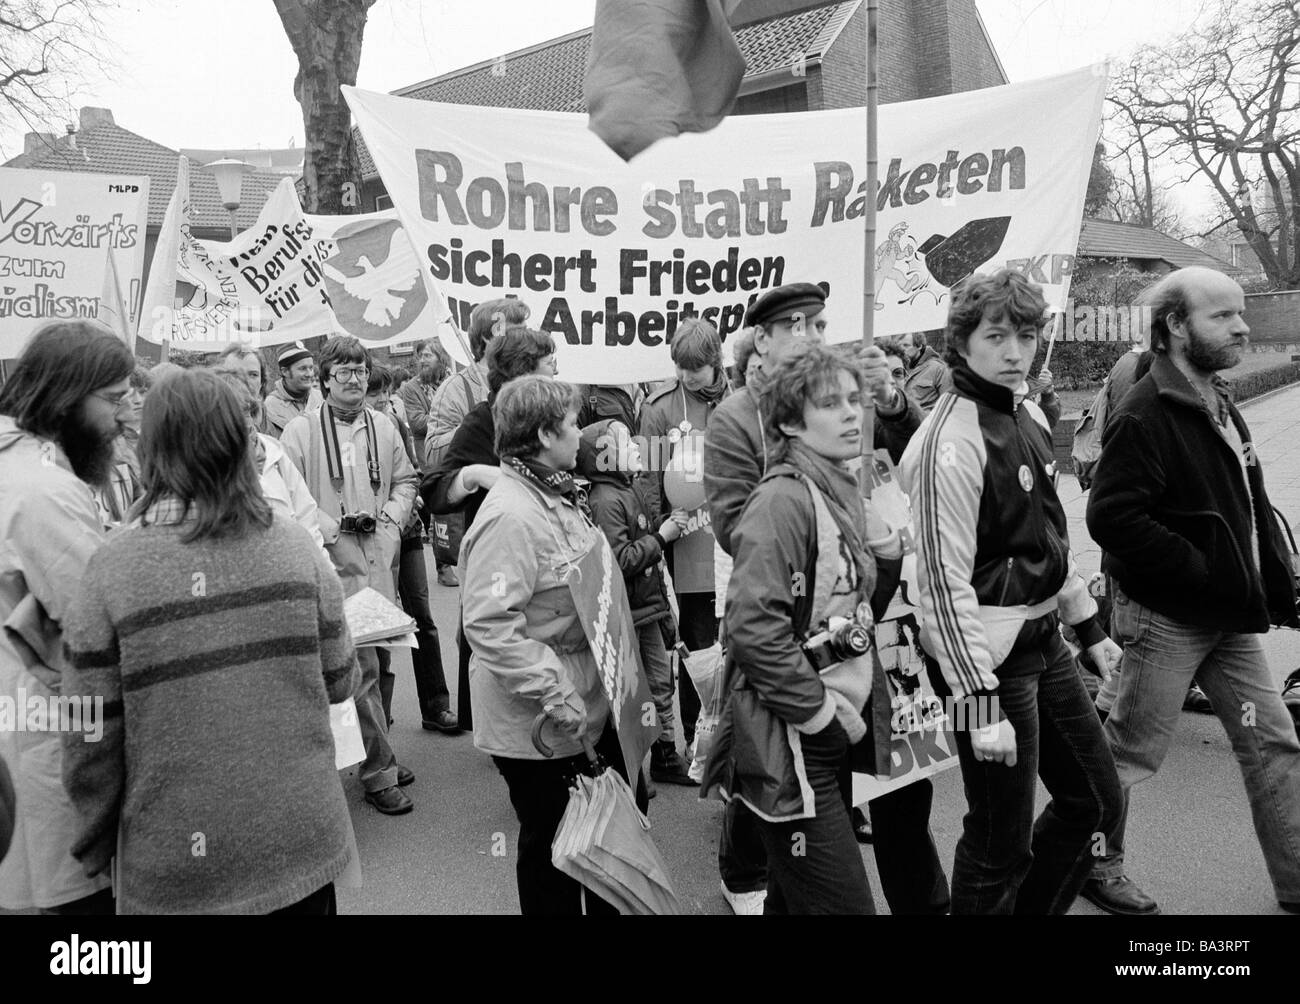 Ottanta, foto in bianco e nero, persone, dimostrazione di pace, Pasqua Marche 1983 in Germania contro l'armamento nucleare, marcia di protesta con striscioni, D-Oberhausen, la zona della Ruhr, Renania settentrionale-Vestfalia Foto Stock